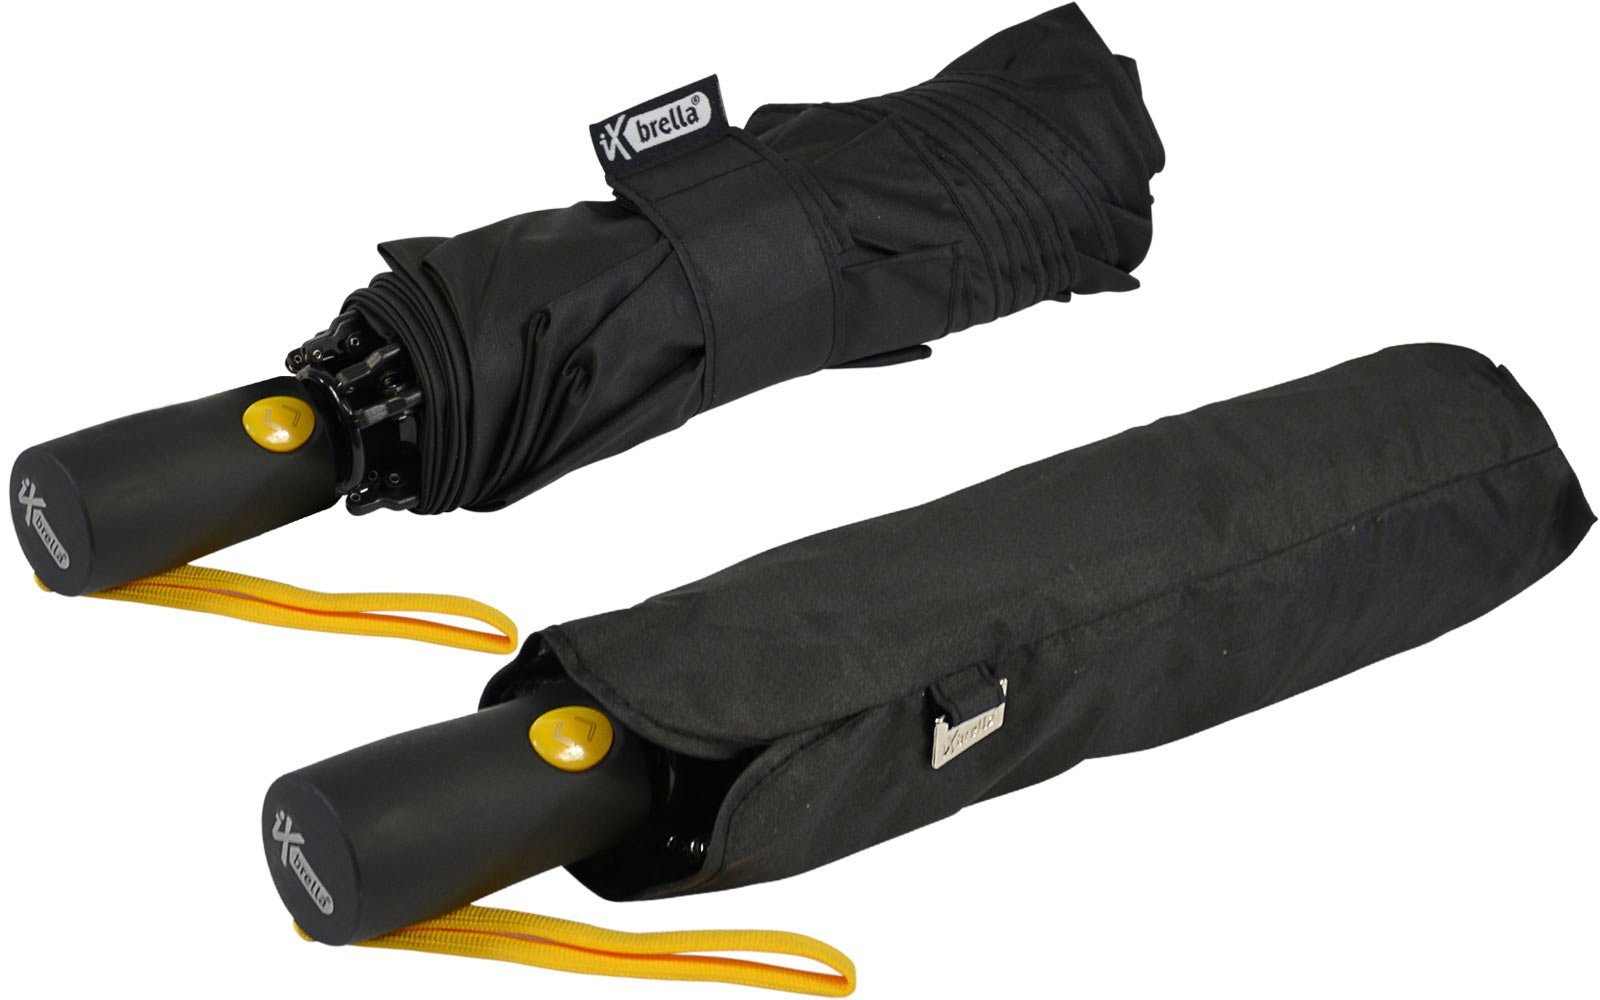 iX-brella Taschenregenschirm Reverse Speichen umgekehrt Fiberglas-Automatiksch, schwarz-gelb mit öffnender bunten stabilen